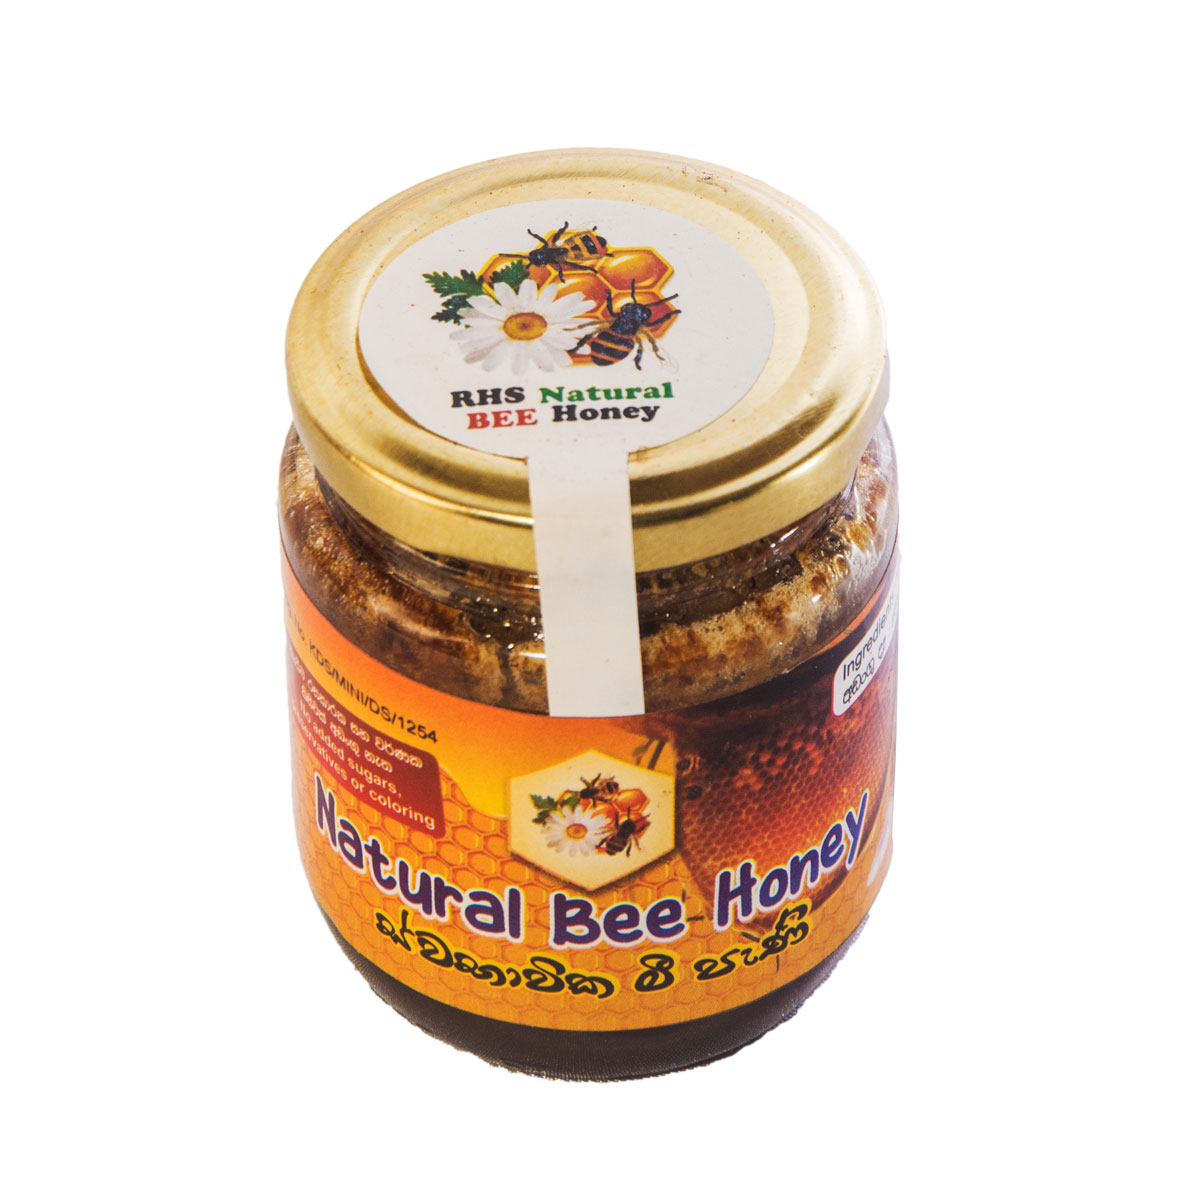 Natural bee honey3